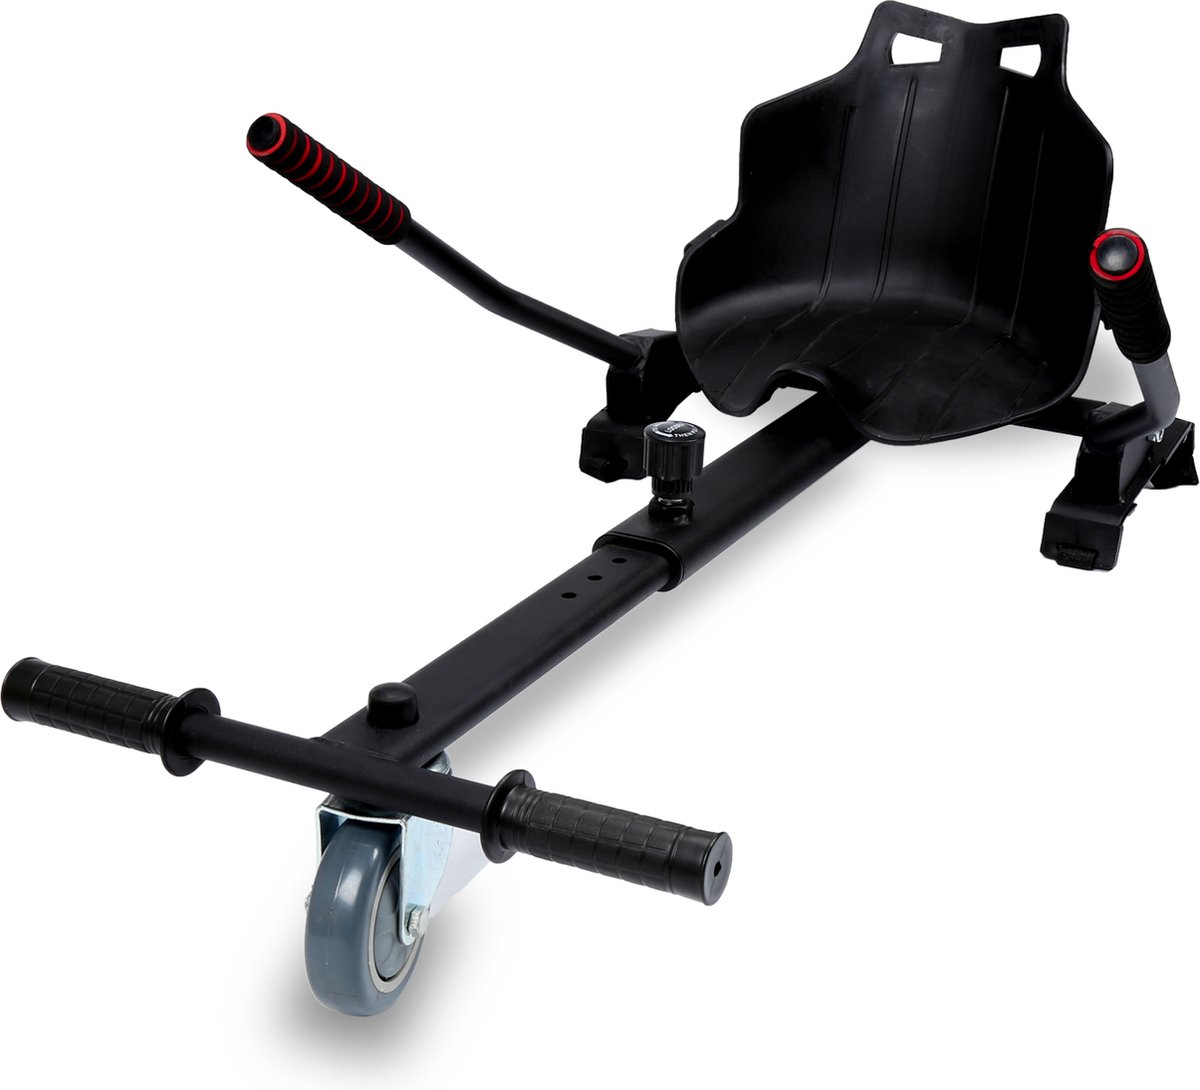 Hoverboard kart - Hoverkart voor Hoverboard - Hoverkart voor Oxboard - Zitje scooter voor 6,5, 8,5 en 10 inch Hoverboard - Kart uitbreiding - Hoge Kwaliteit Materiaal - Merkloos